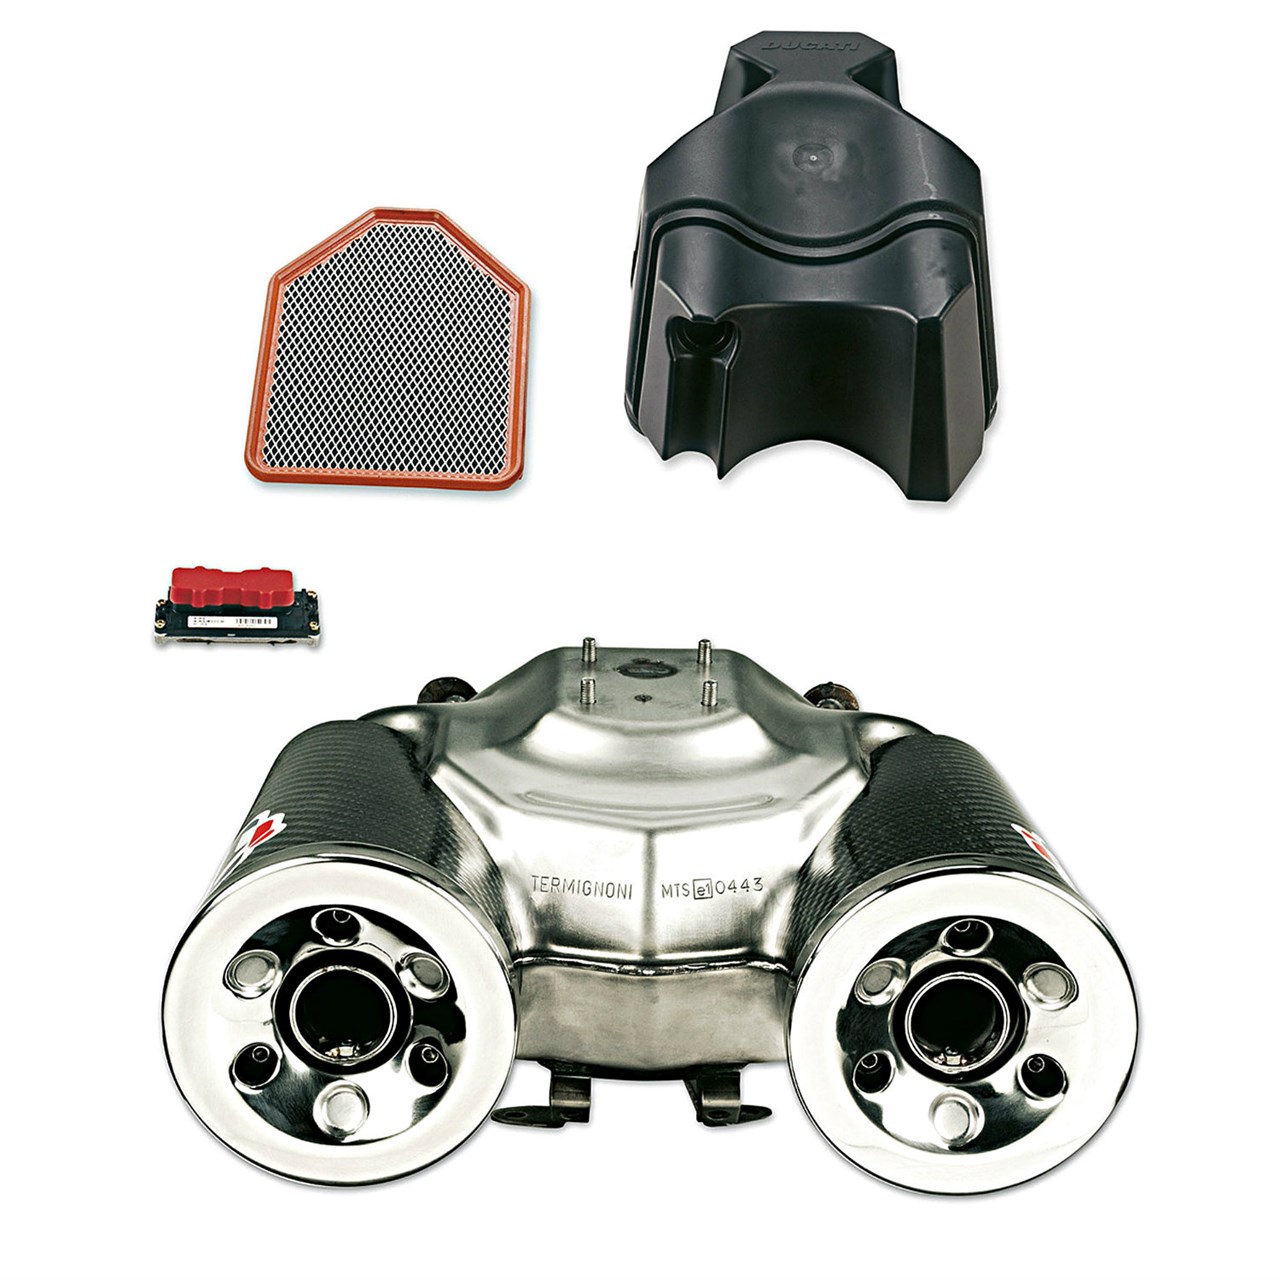 Picture of Ducati - Kit zugelassener Schalldämpfer mit externen Rohren aus Kohlefaser